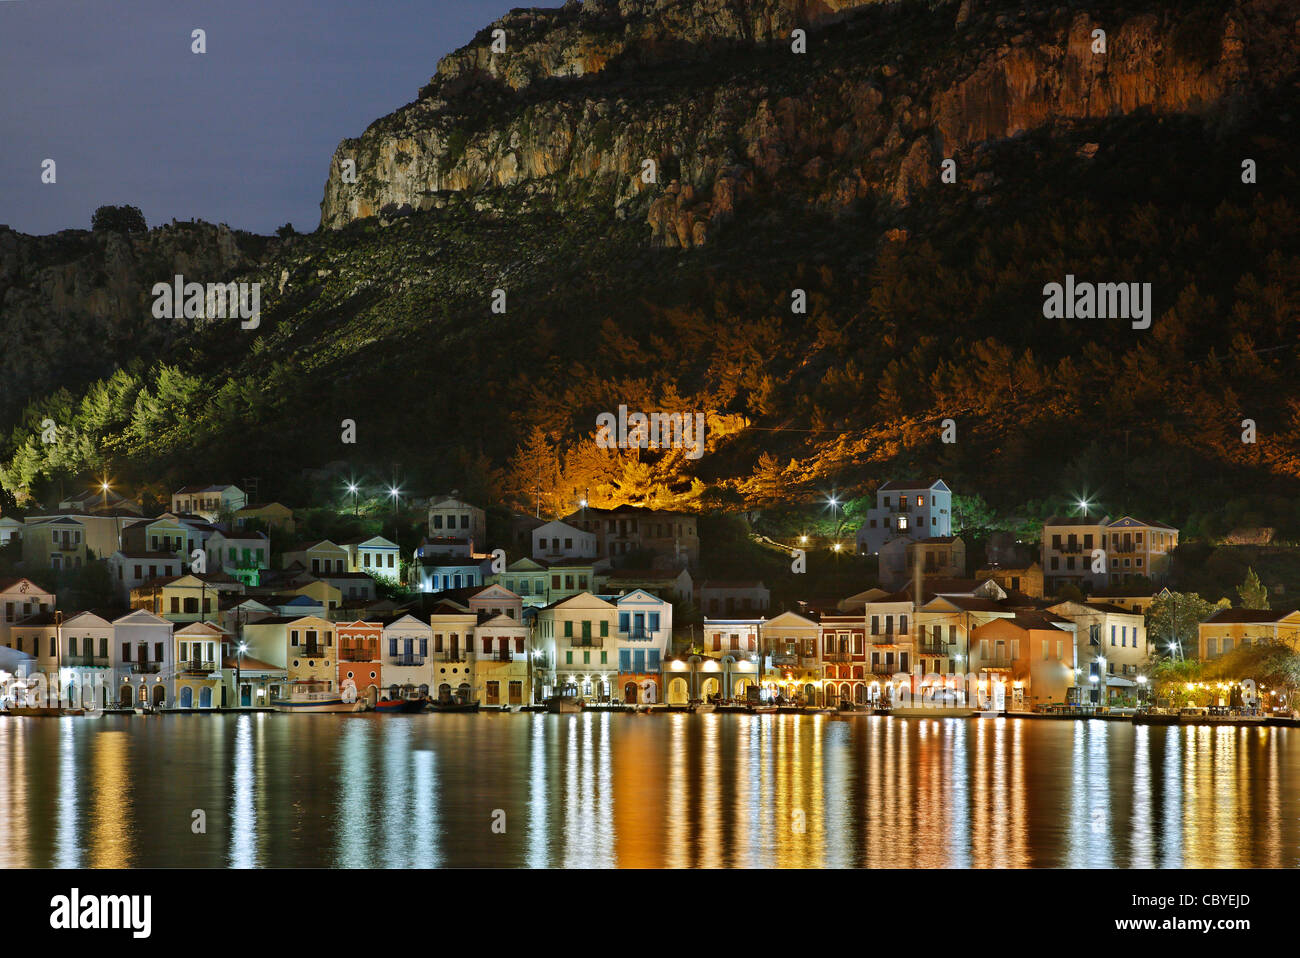 Parziale vista notturna del pittoresco villaggio di Kastellorizo (o 'Meghisti') isola, Dodecaneso, Grecia Foto Stock